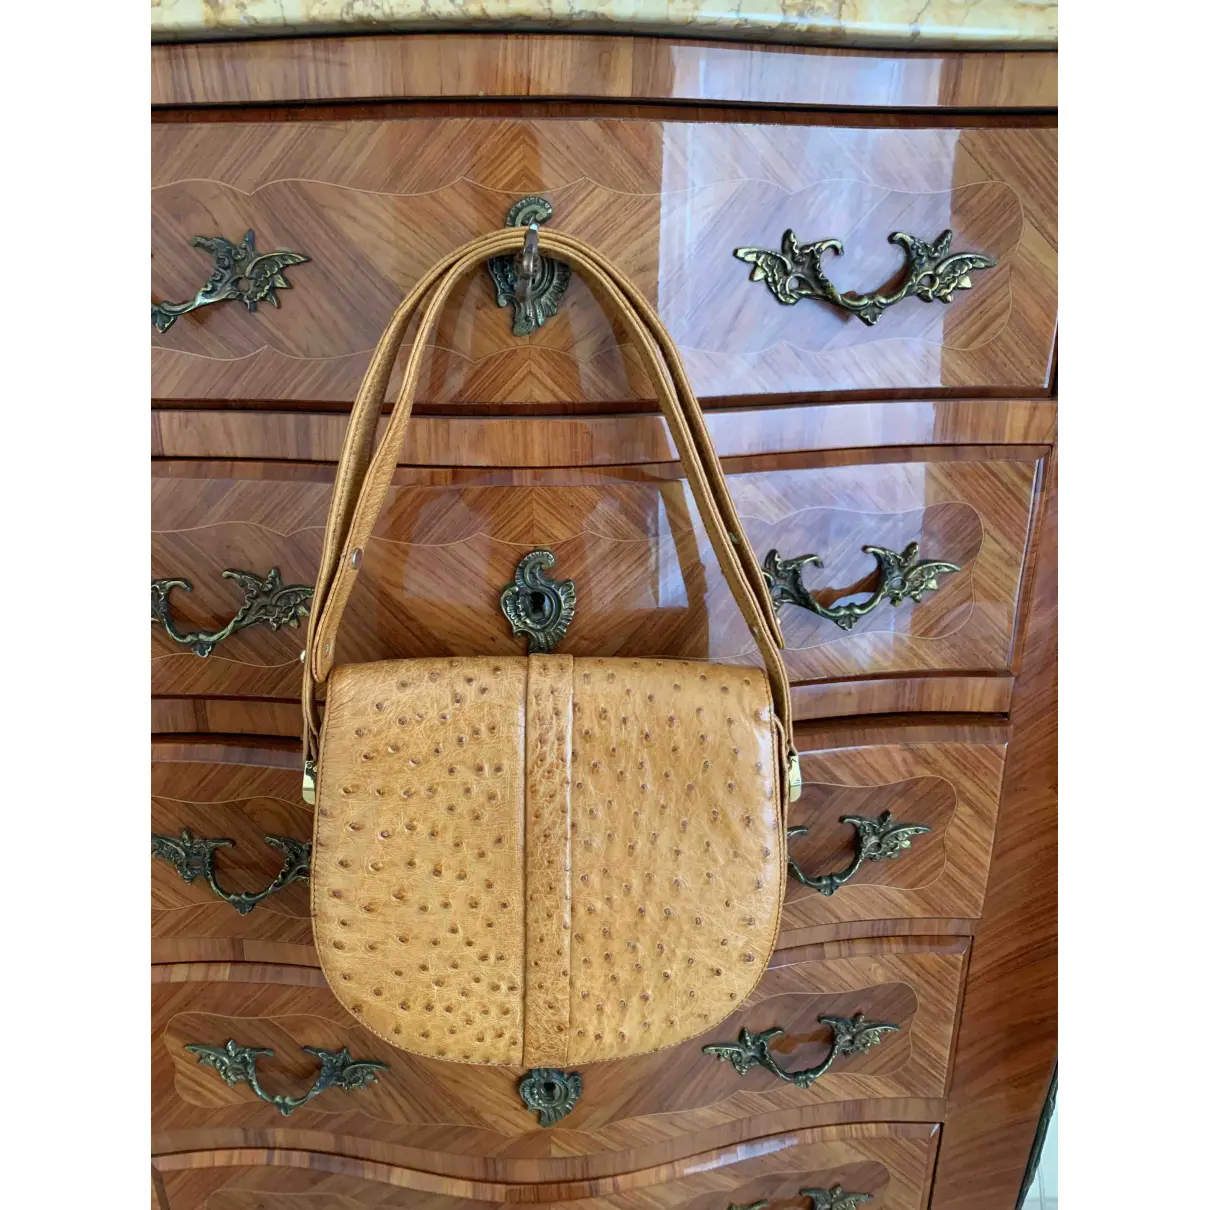 Buy Fred Ostrich handbag online - Vintage